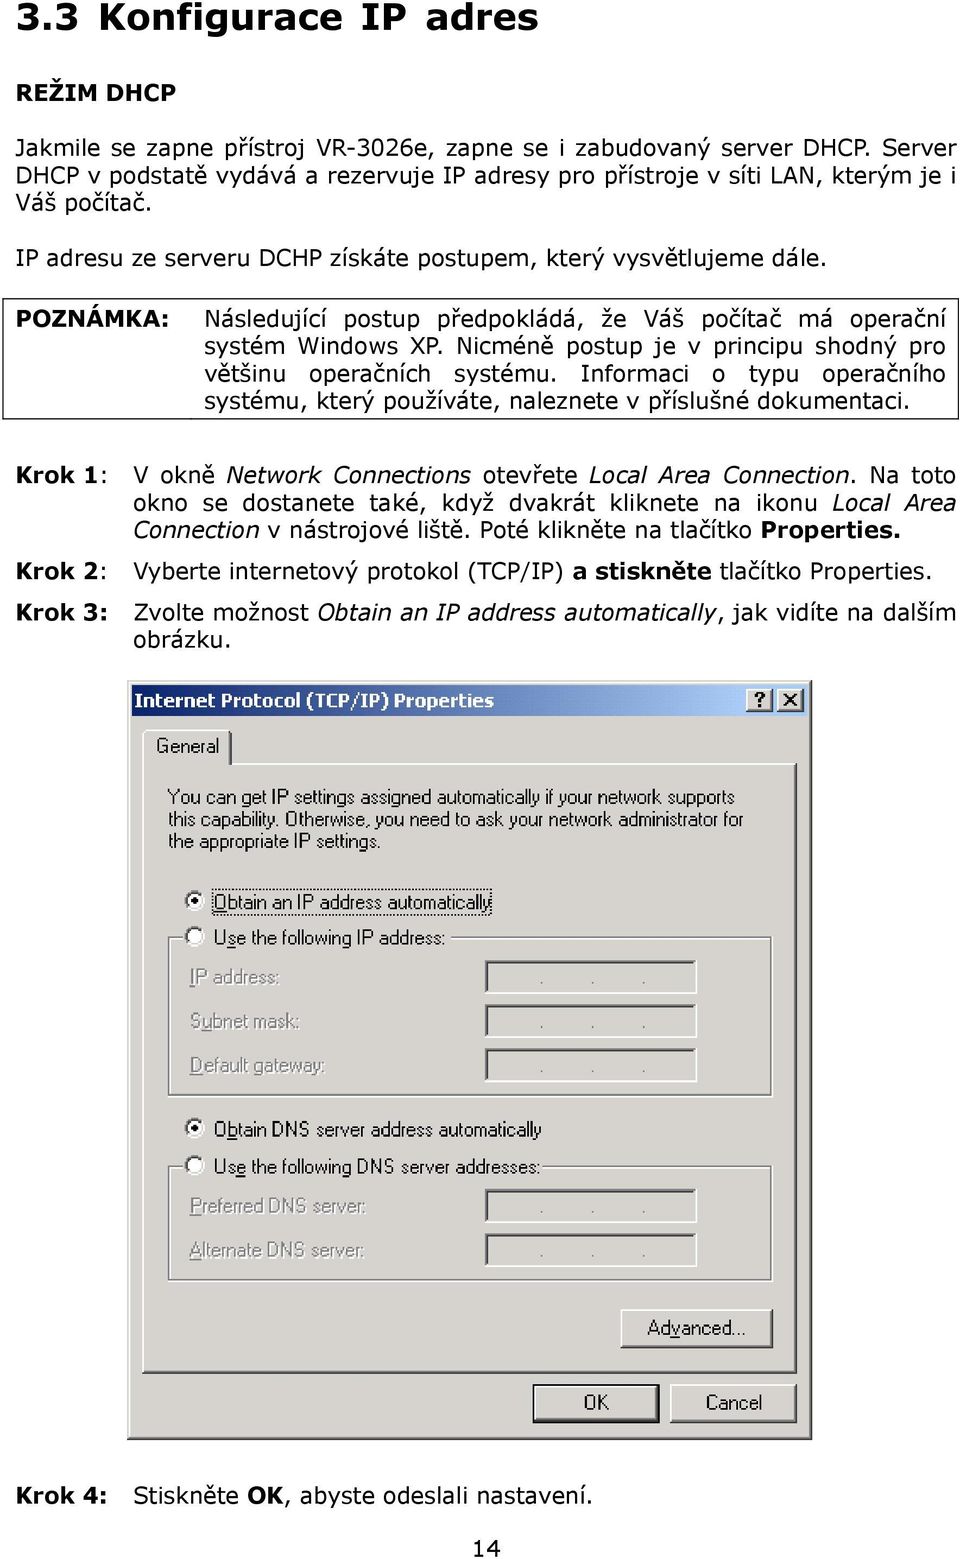 POZNÁMKA: Následující postup předpokládá, že Váš počítač má operační systém Windows XP. Nicméně postup je v principu shodný pro většinu operačních systému.